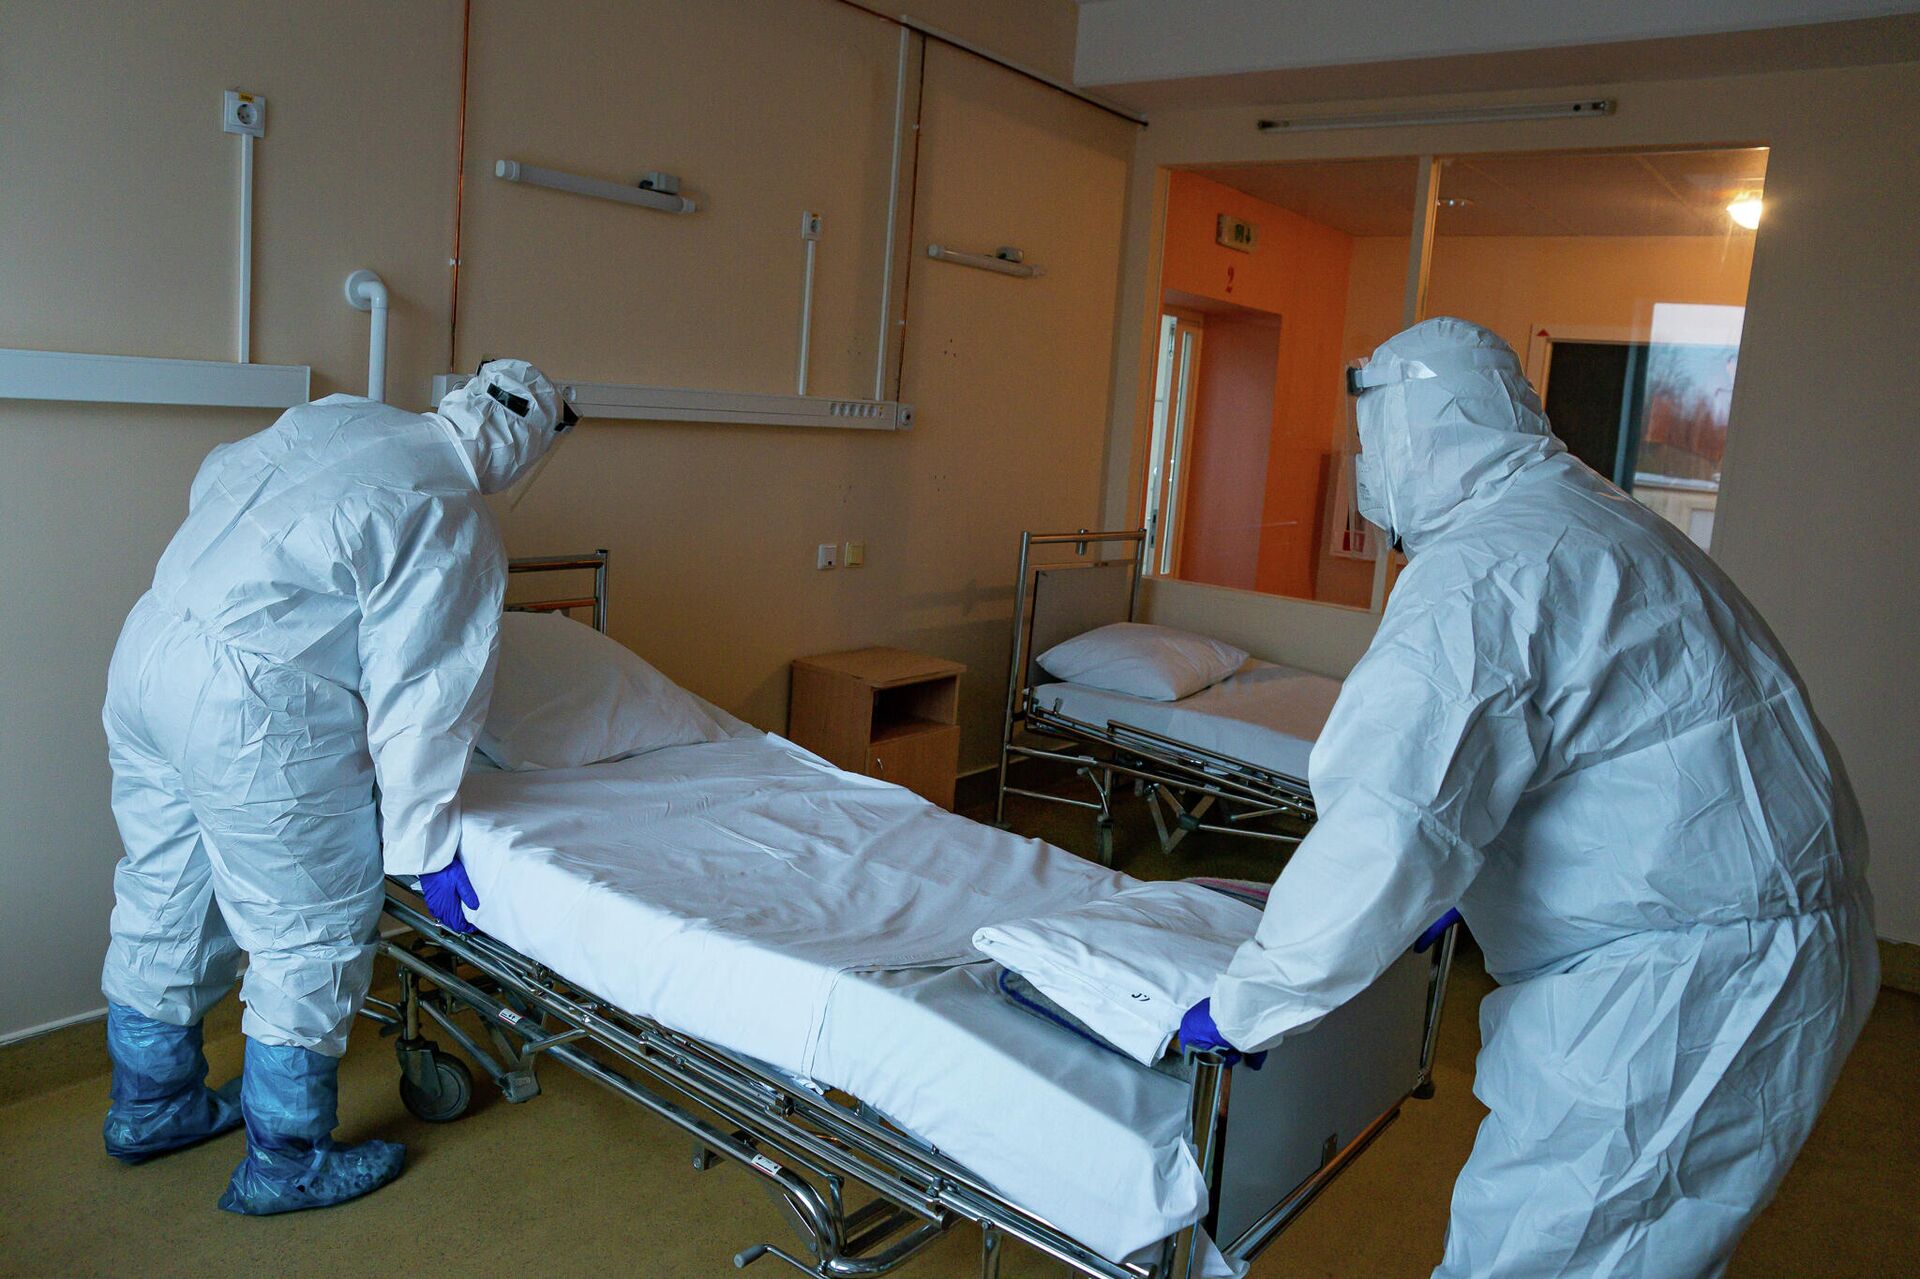 Медицинские работники готовят палату к приему пациентов с COVID-19 в Центре легочных заболеваний и туберкулеза в Даугавпилсе - Sputnik Латвия, 1920, 15.11.2021